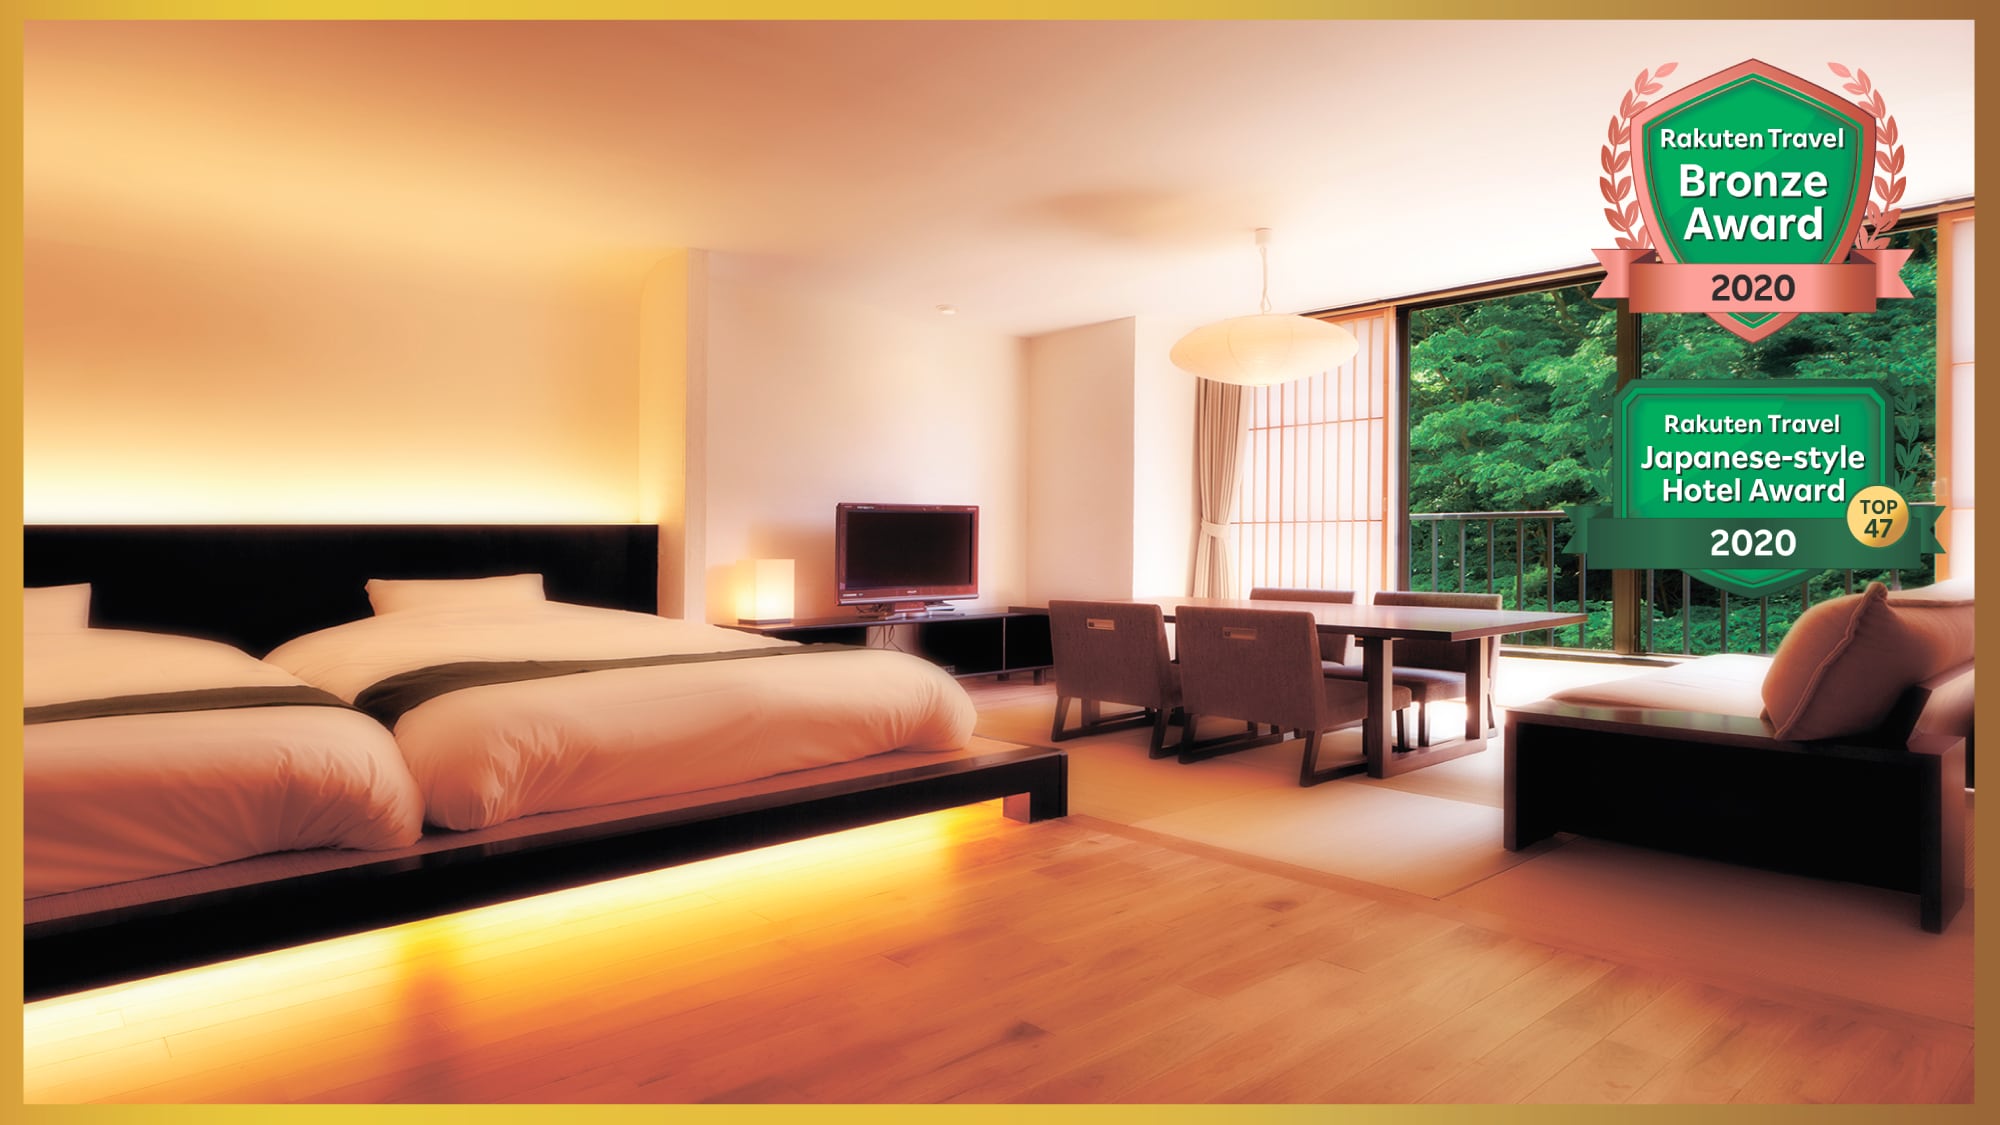 2012年5月重新开业♪会津现代日式和西式房间“浪漫亭特别房间”的形象♪